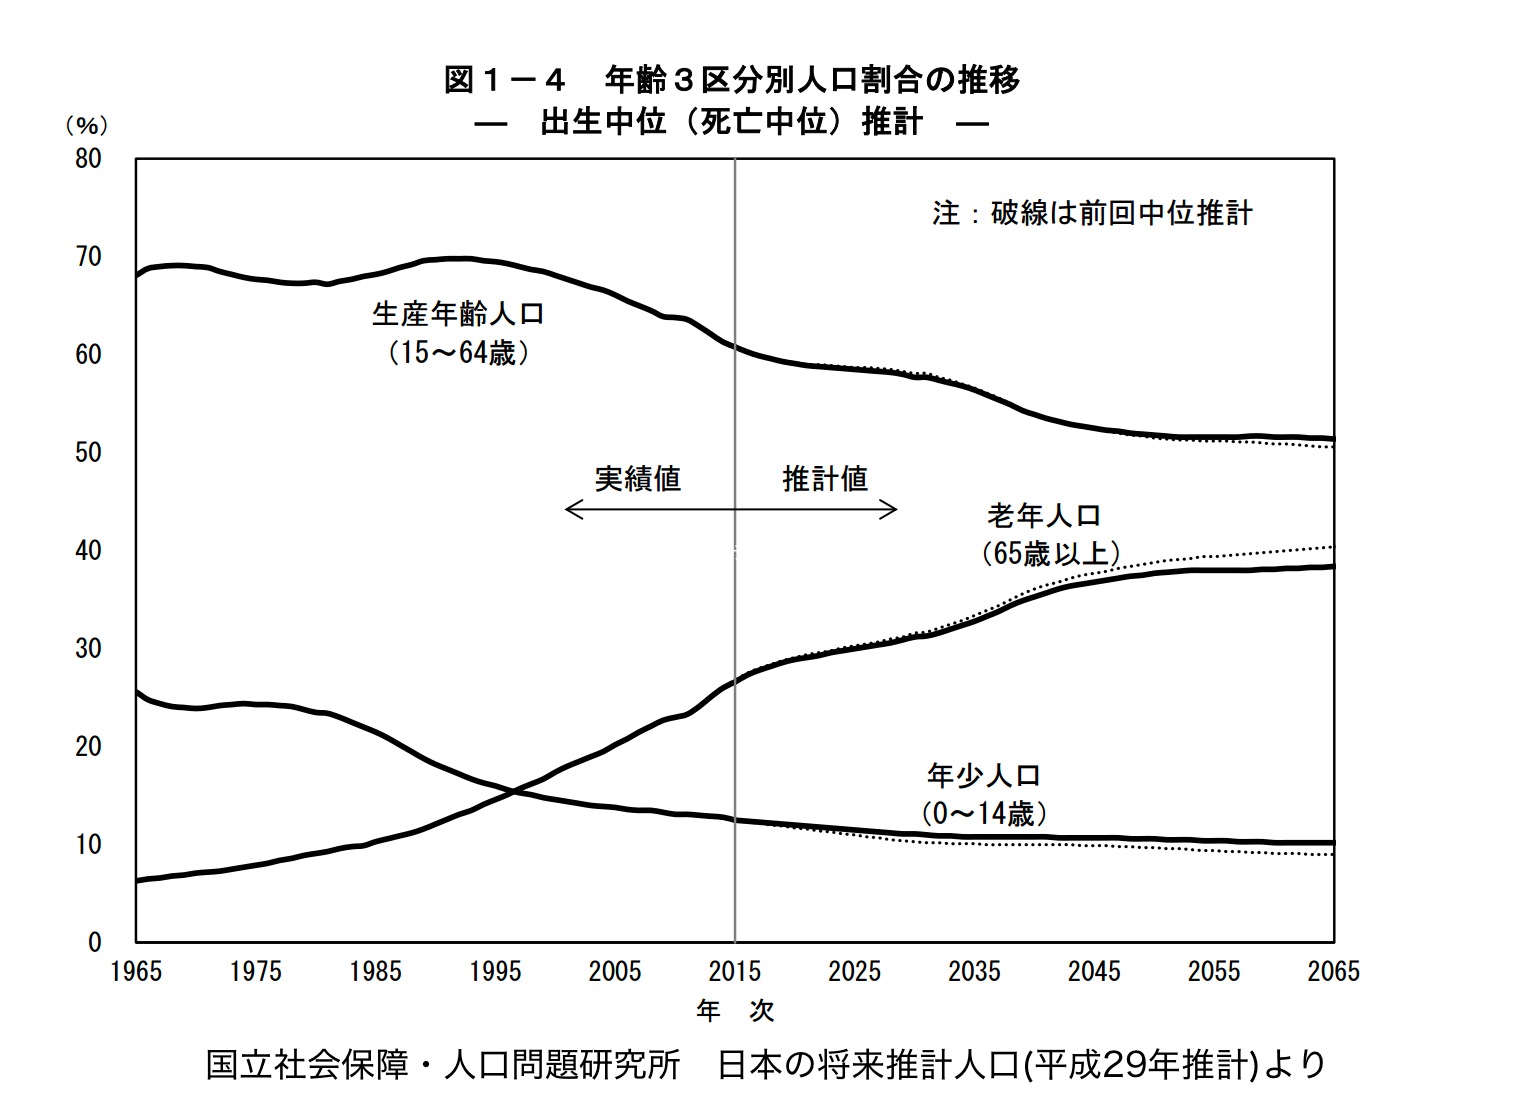 日本の将来推計人口(平成29年推測値)